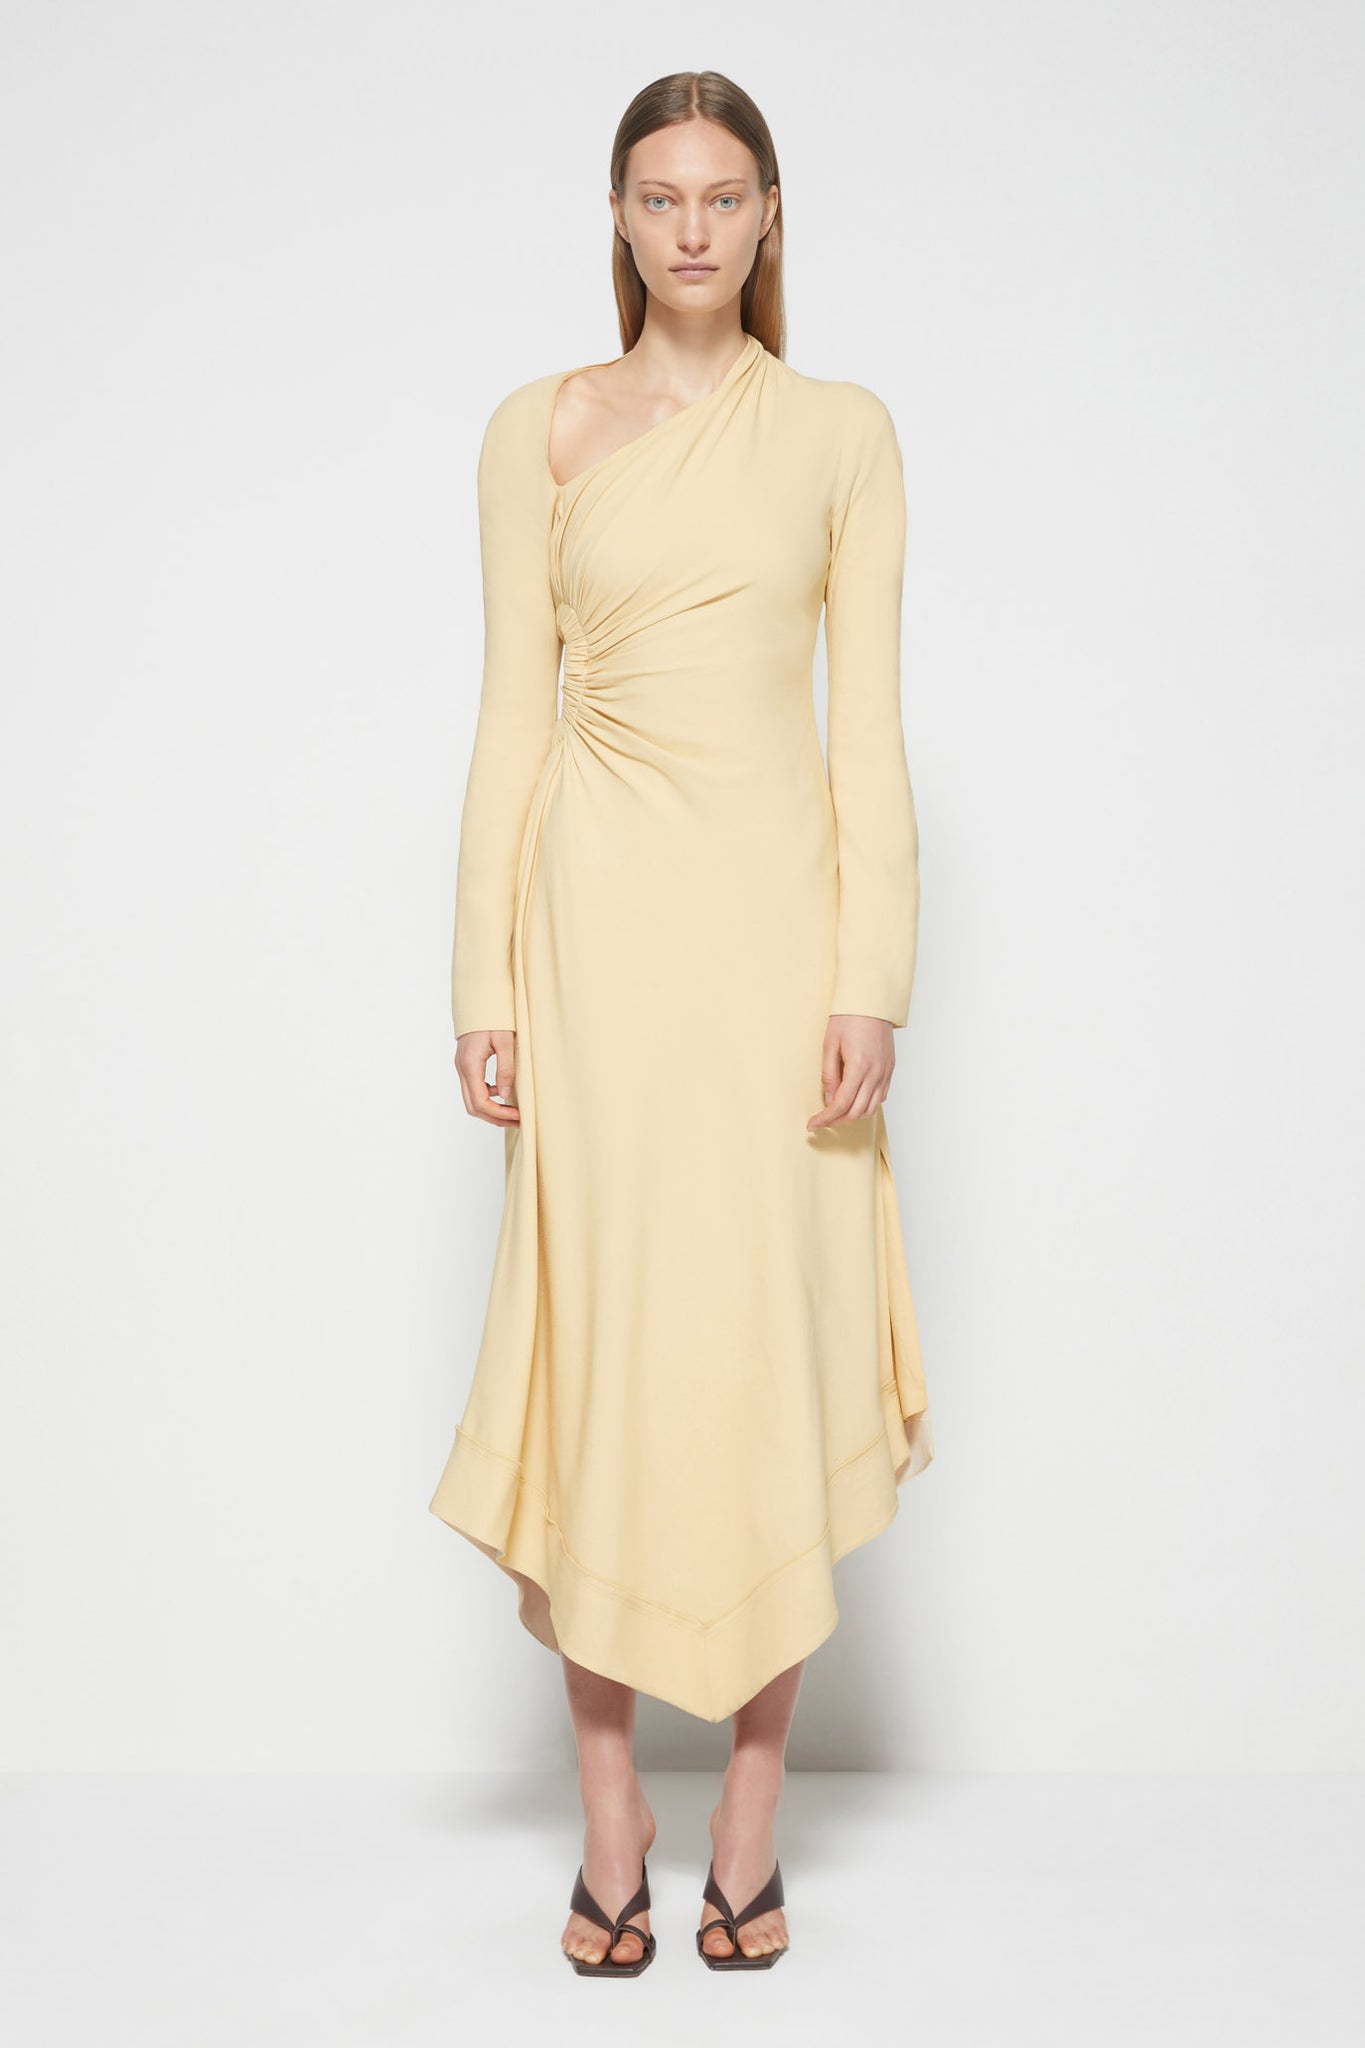 Christie Draped Cutout Dress - SIMKHAI 